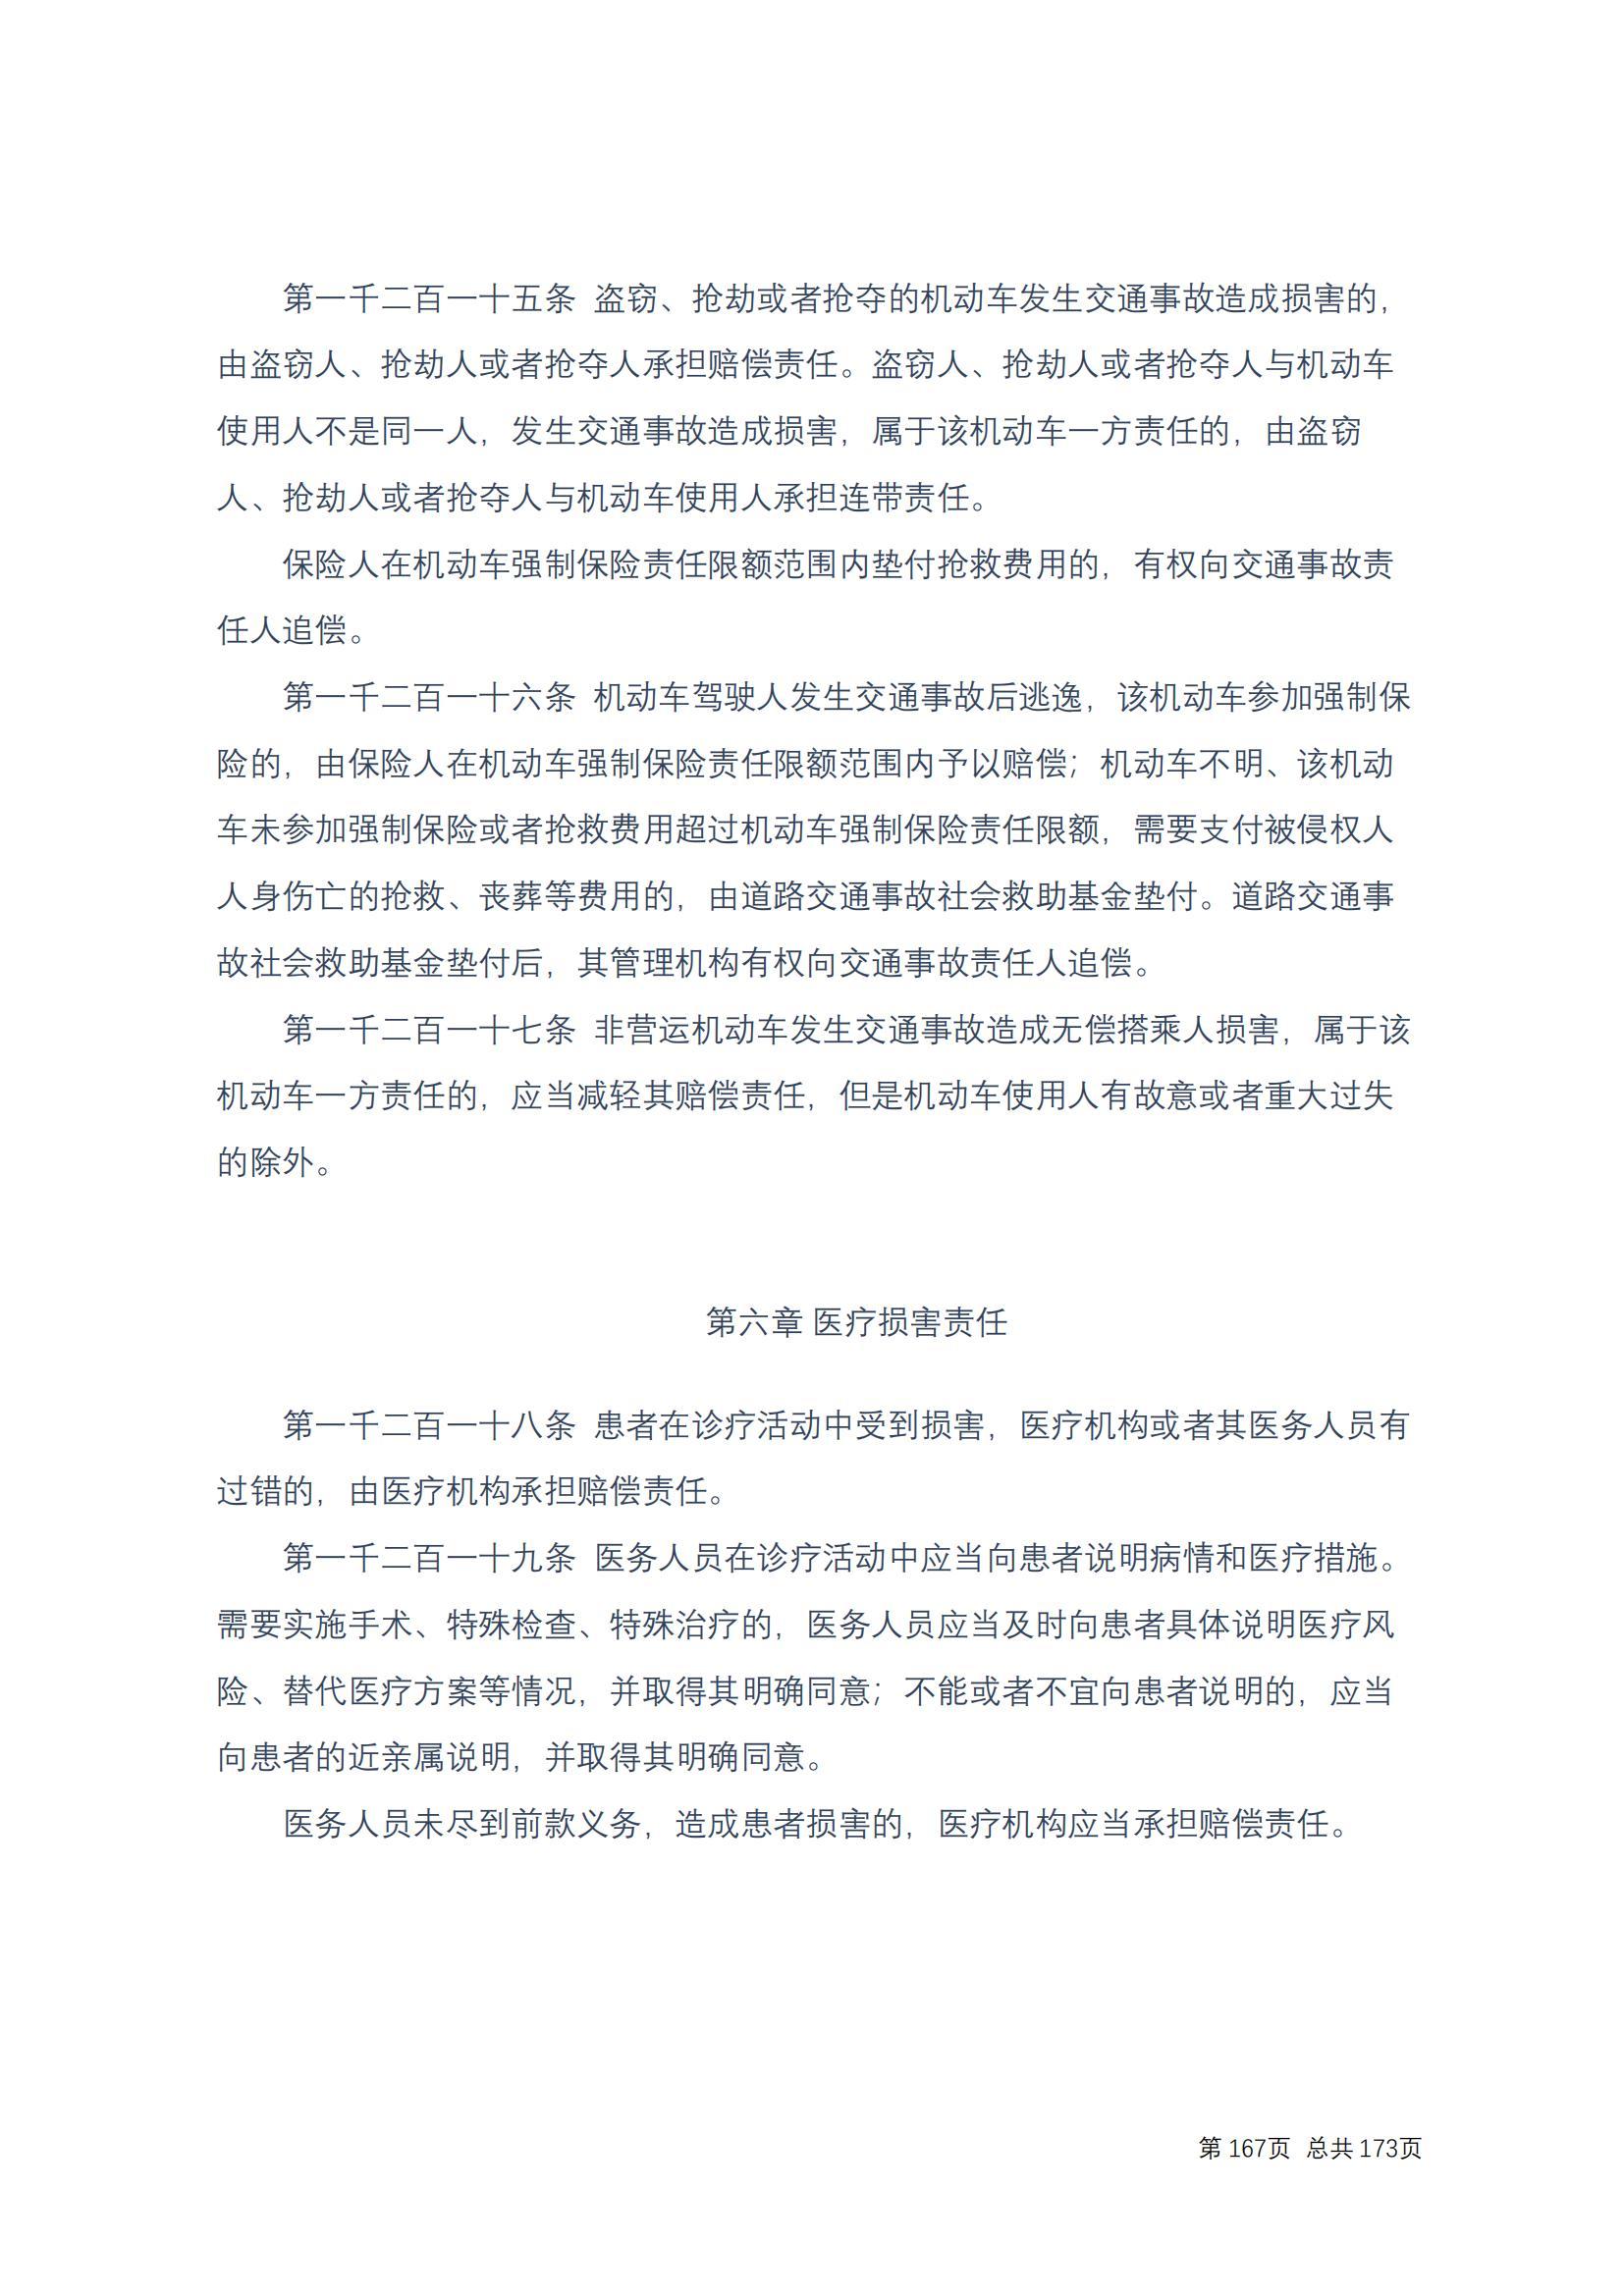 中华人民共和国民法典 修改过_166